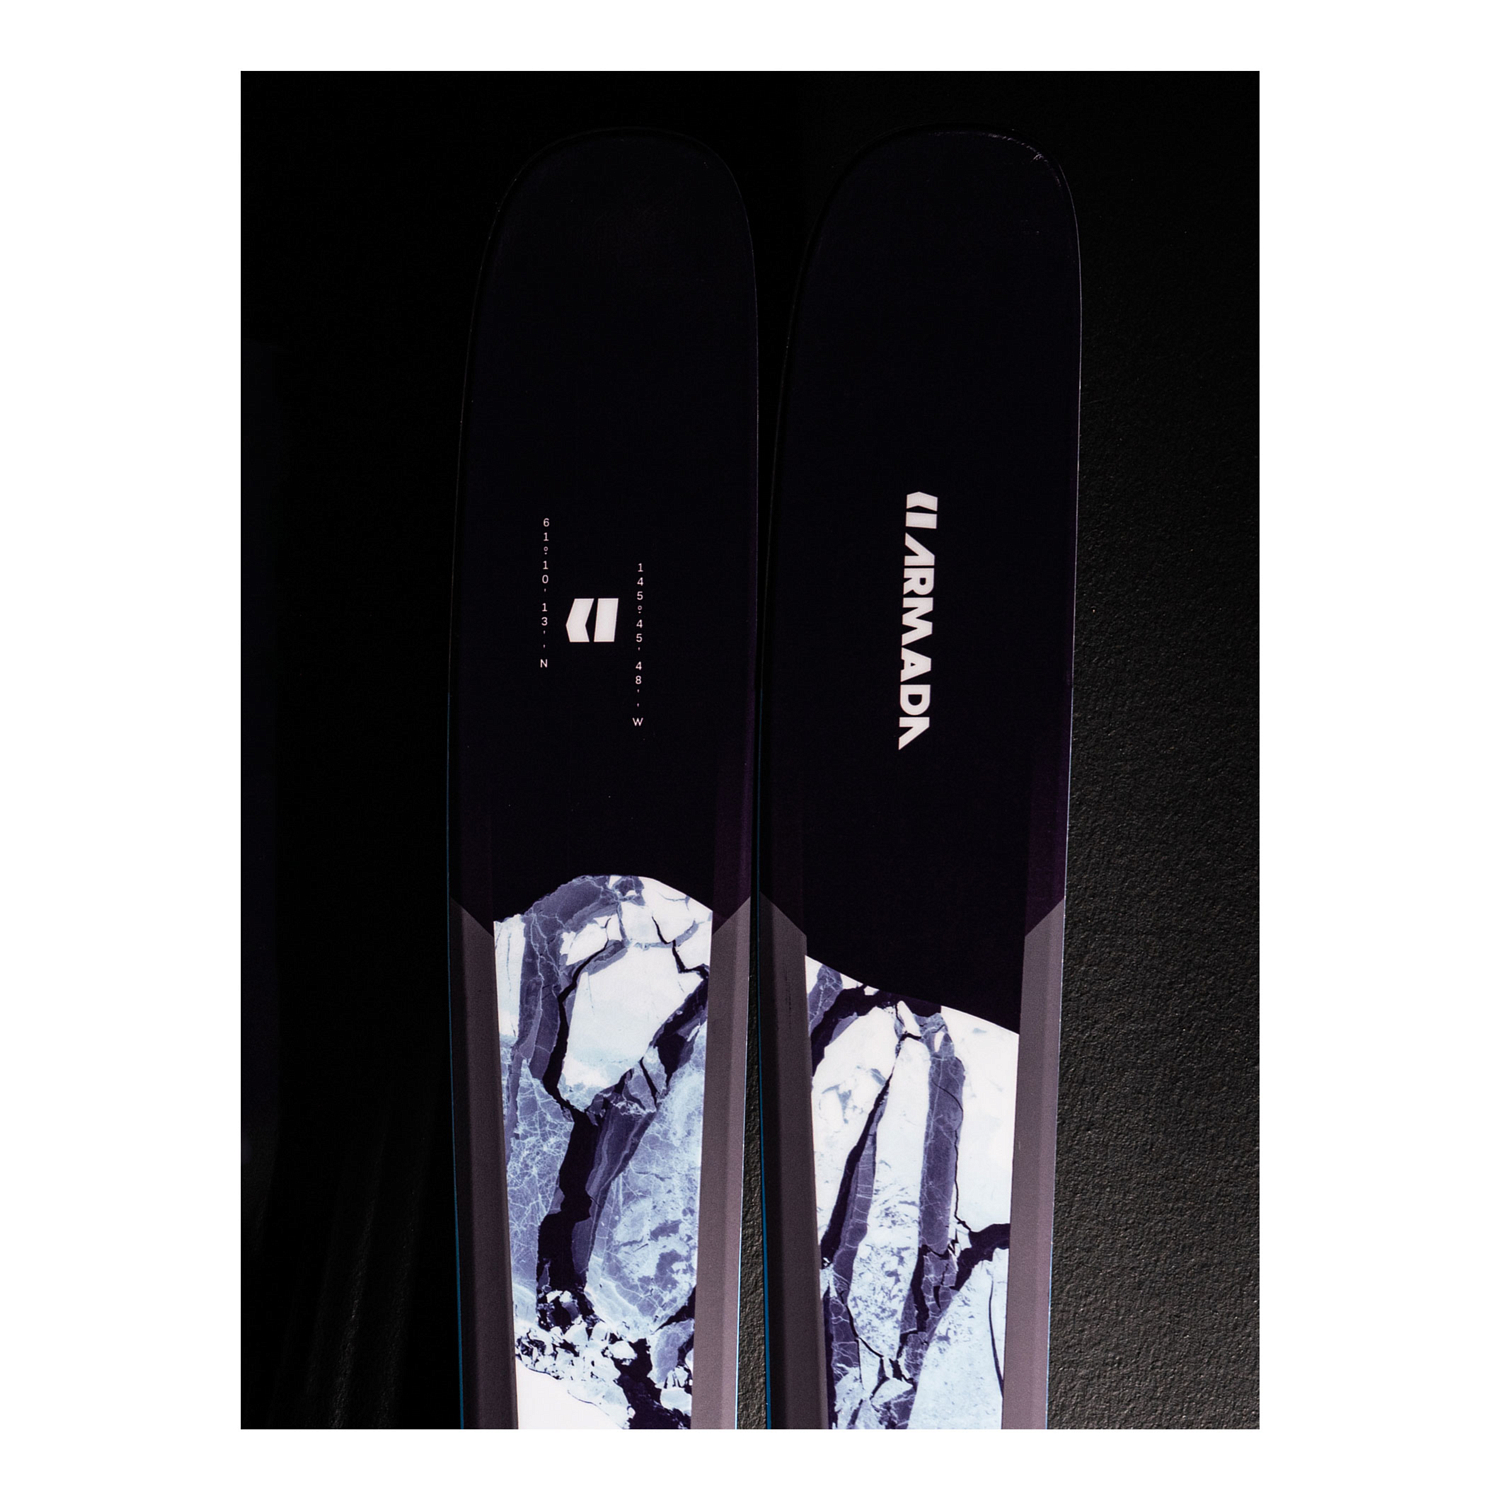 Горные лыжи ARMADA 2020-21 Tracer 118